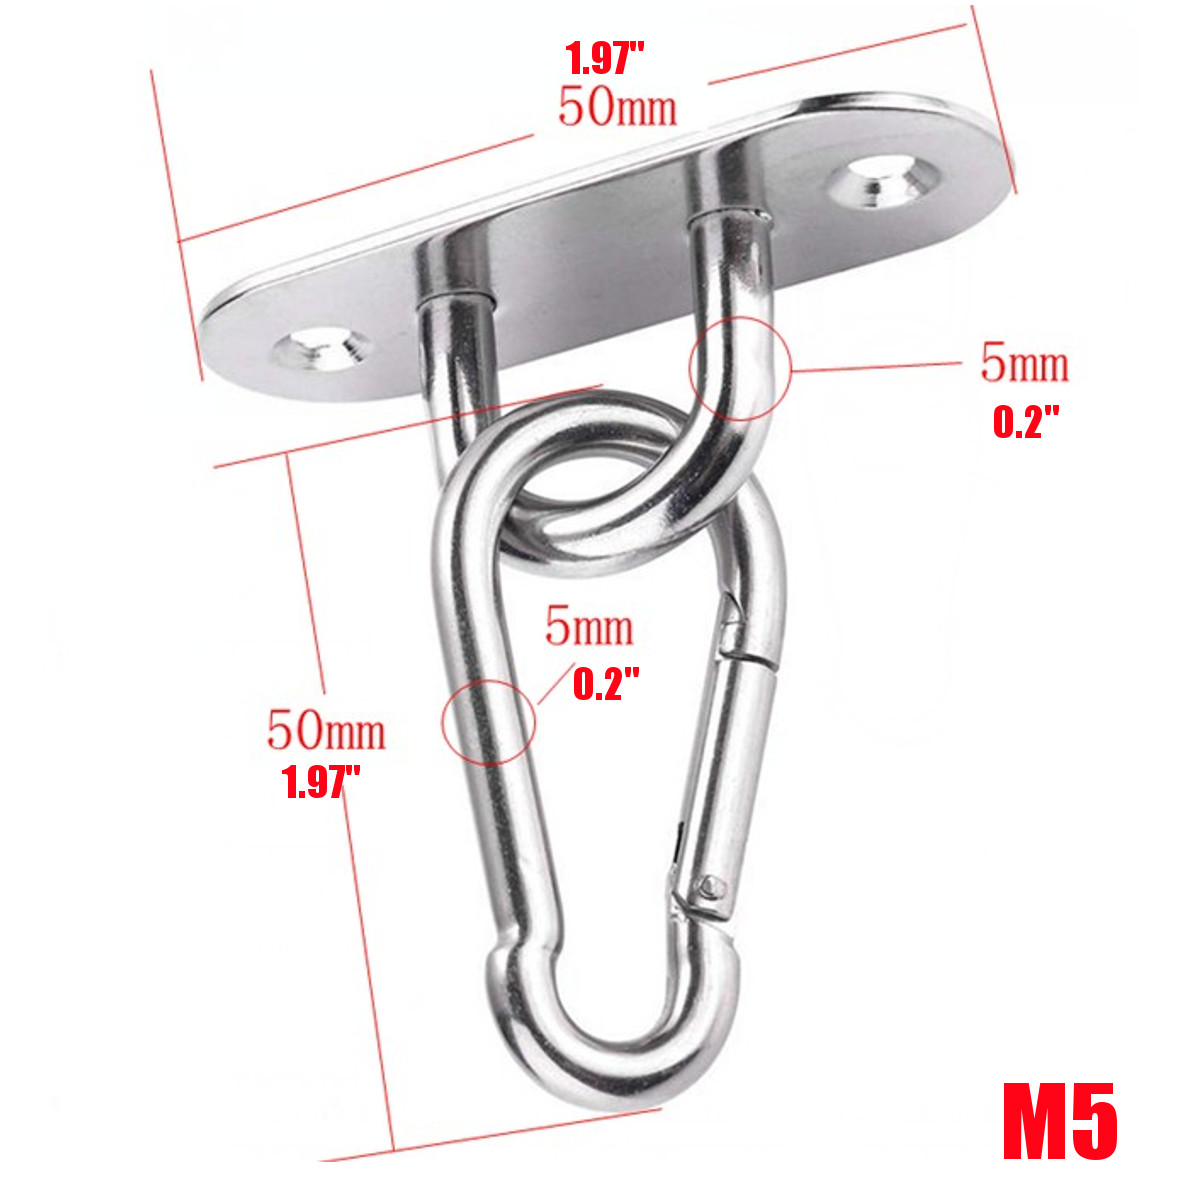 Swing-Swivel-Hook-for-Hammock-Wall-Fixing-Plate-Hardware-Stainless-Steel-Kit-1693452